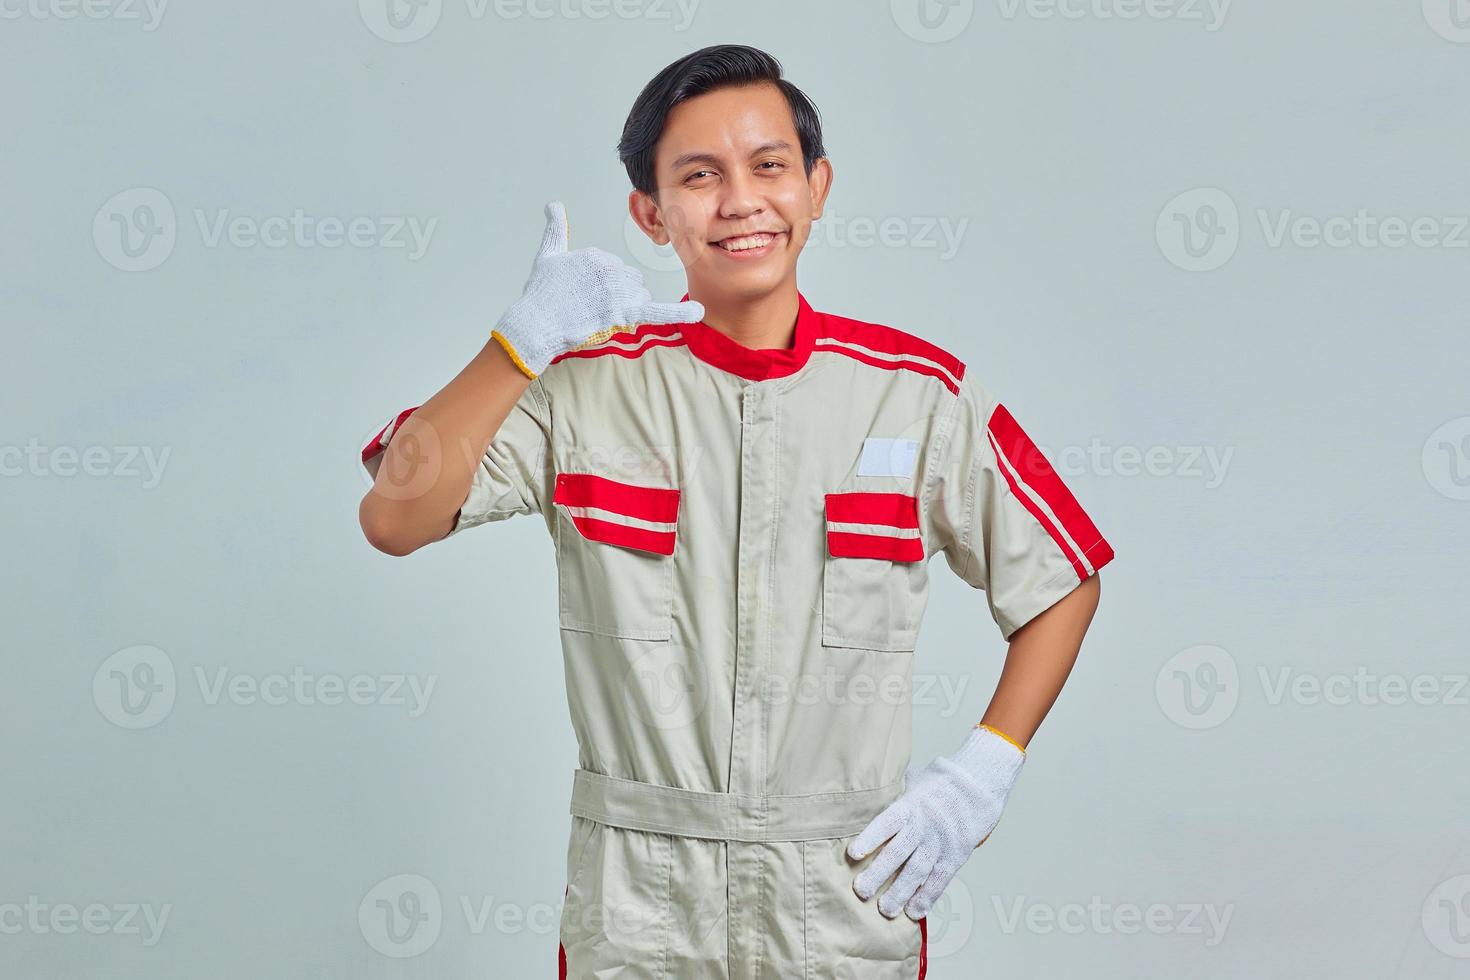 ritratto di un bell'uomo allegro che indossa un'uniforme meccanica che mostra approvazione con il gesto del pollice in alto su sfondo grigio foto